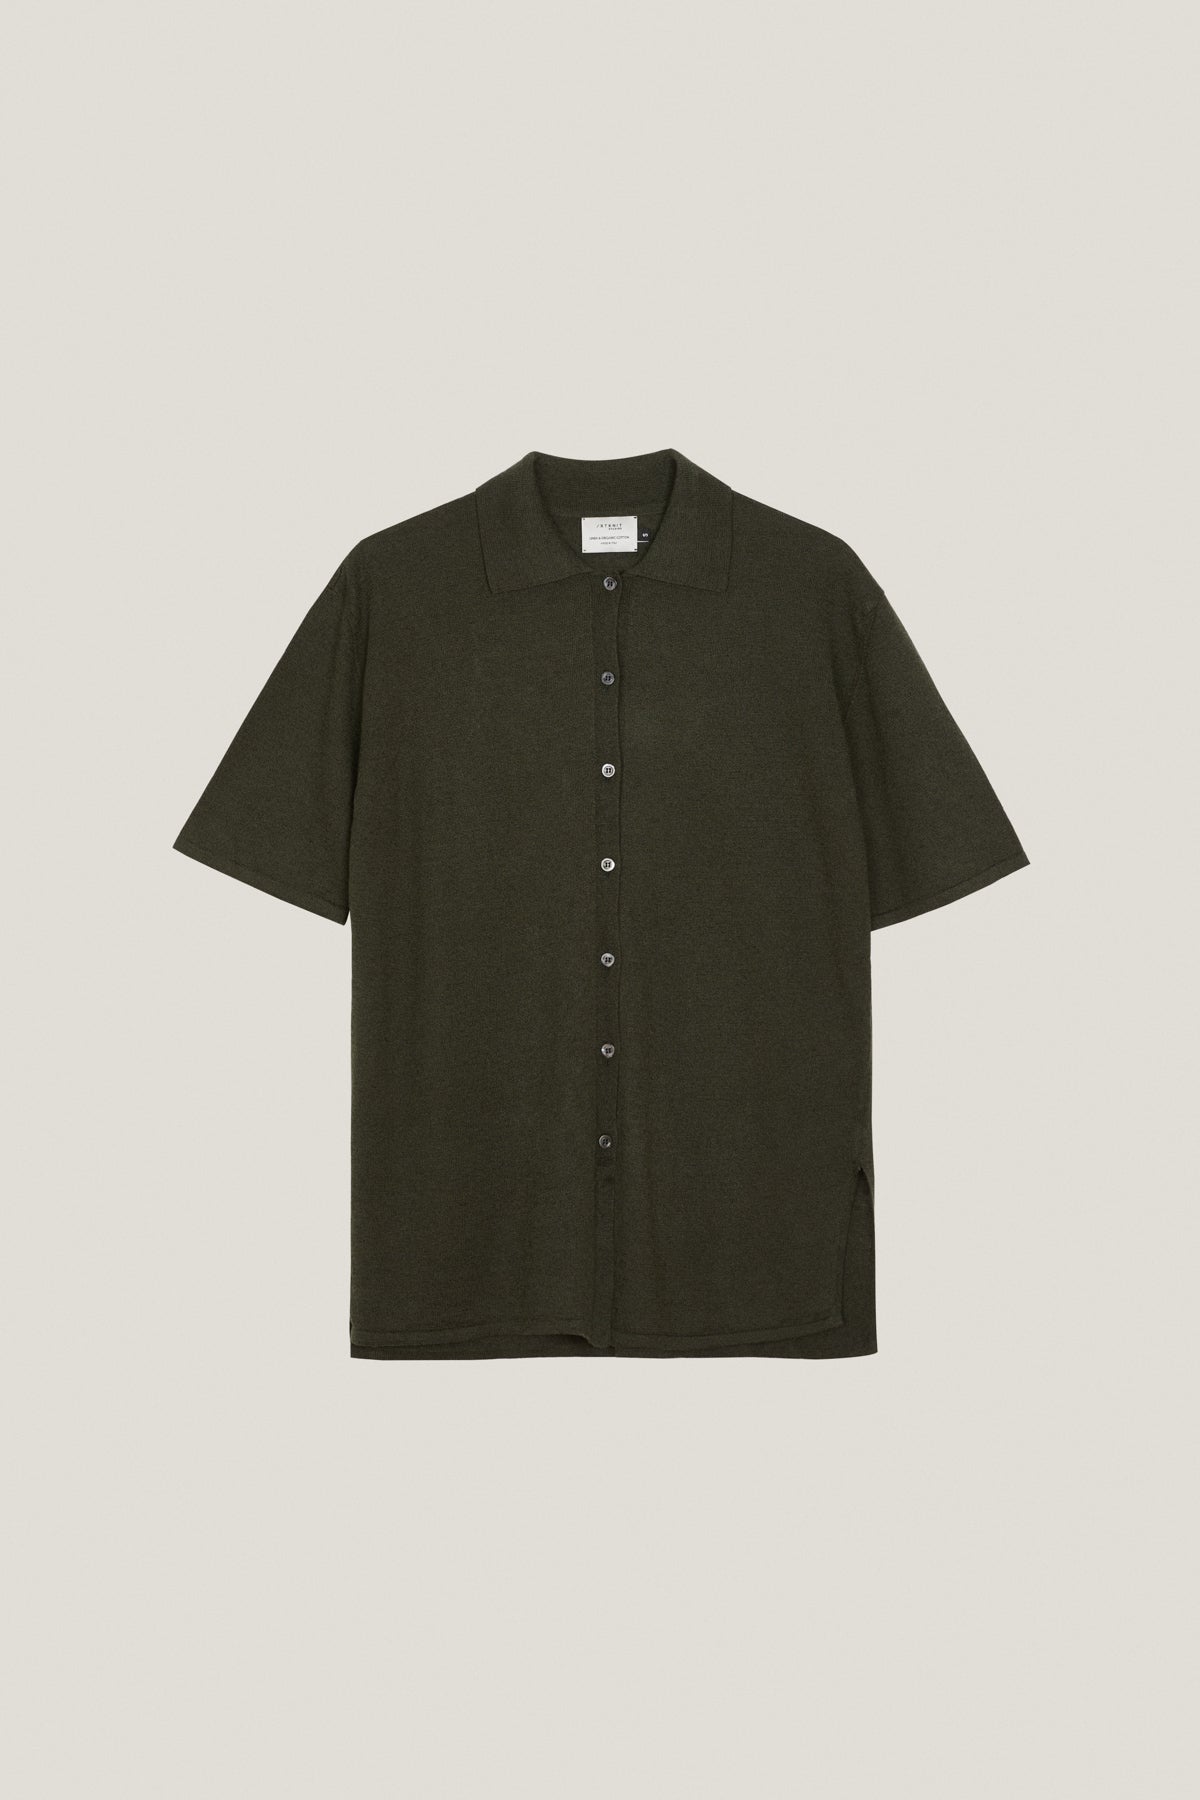 Military Green | The Linen Cotton Short Sleeve Shirt